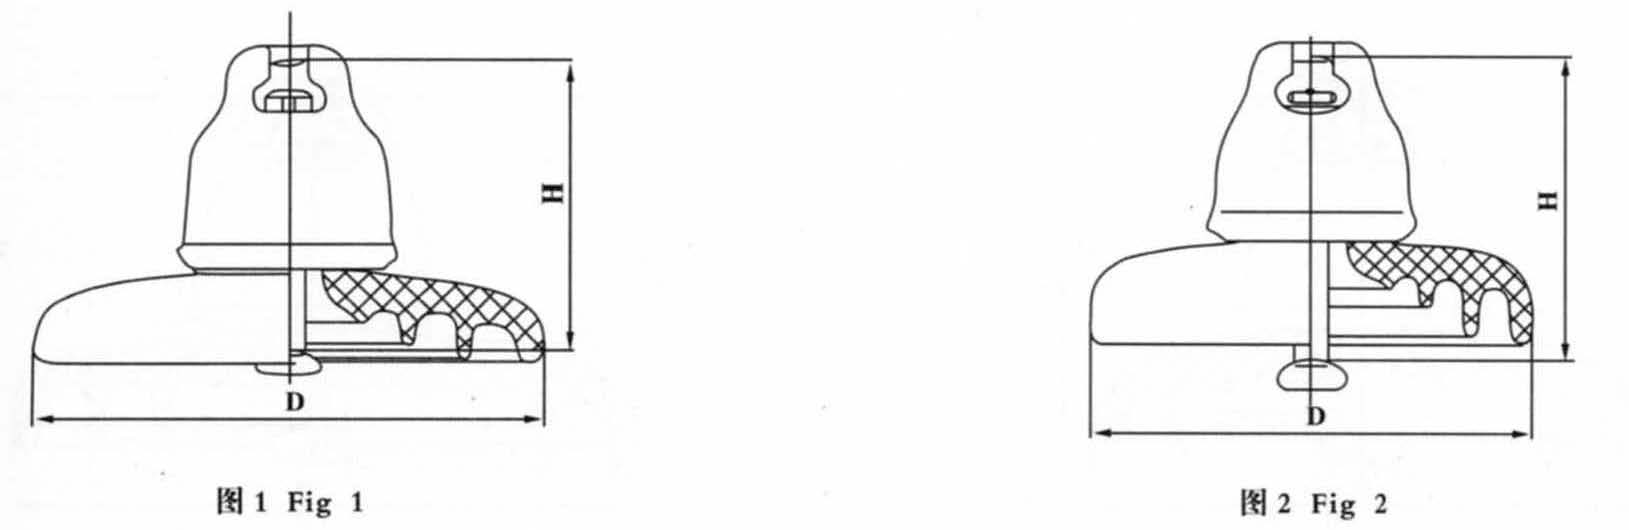 Диск Подвеска Изолятор фарфоровый хр-100 (Нормальный тип) 图片 1.png